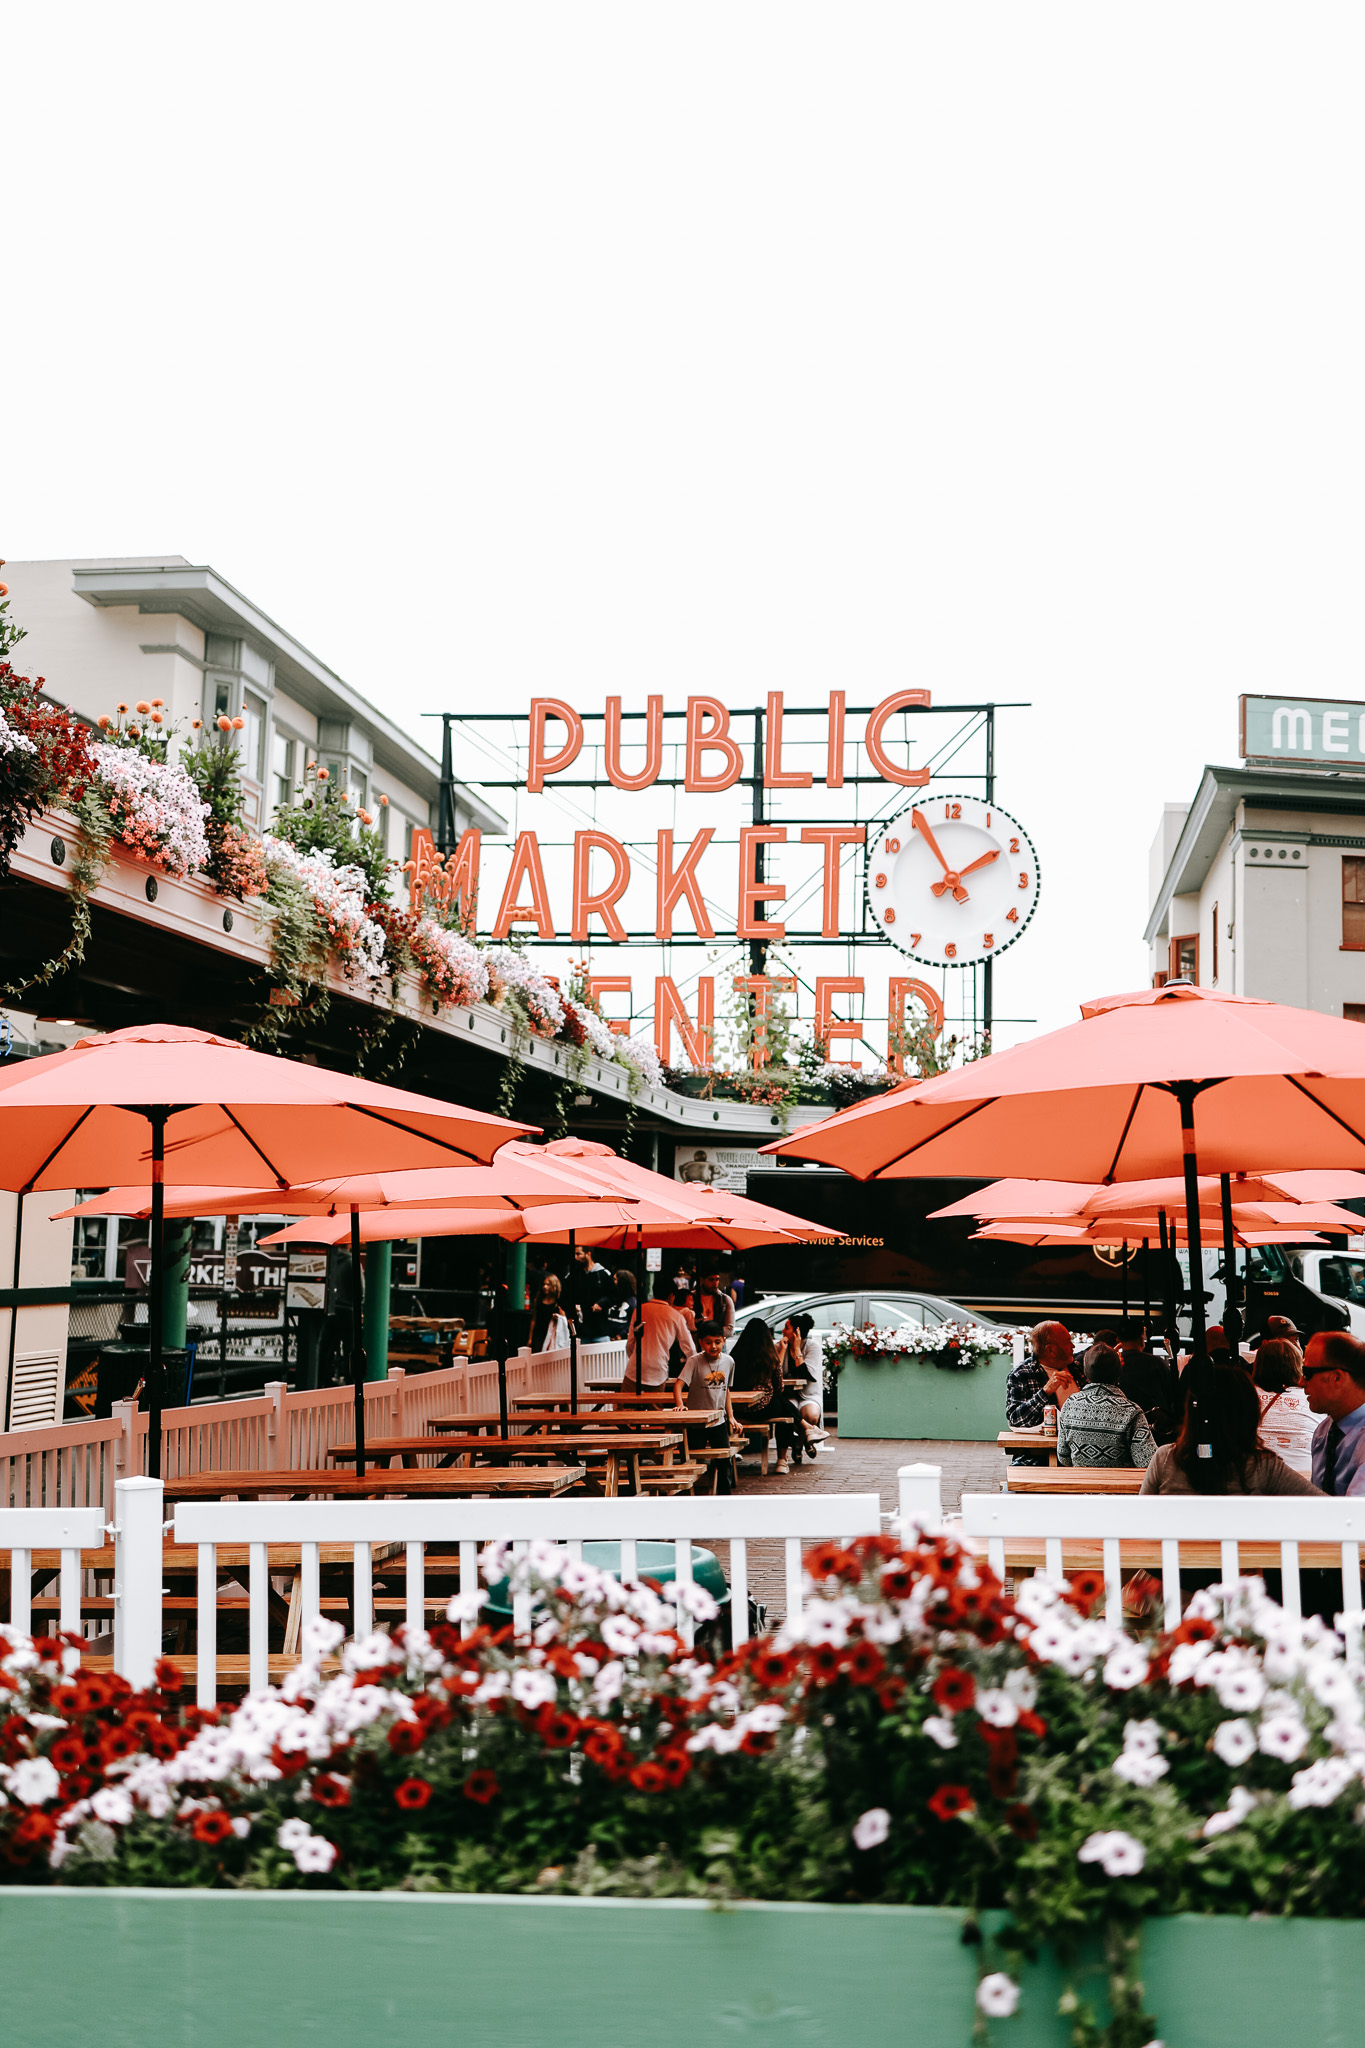 Pike Place Market Public Market Sign